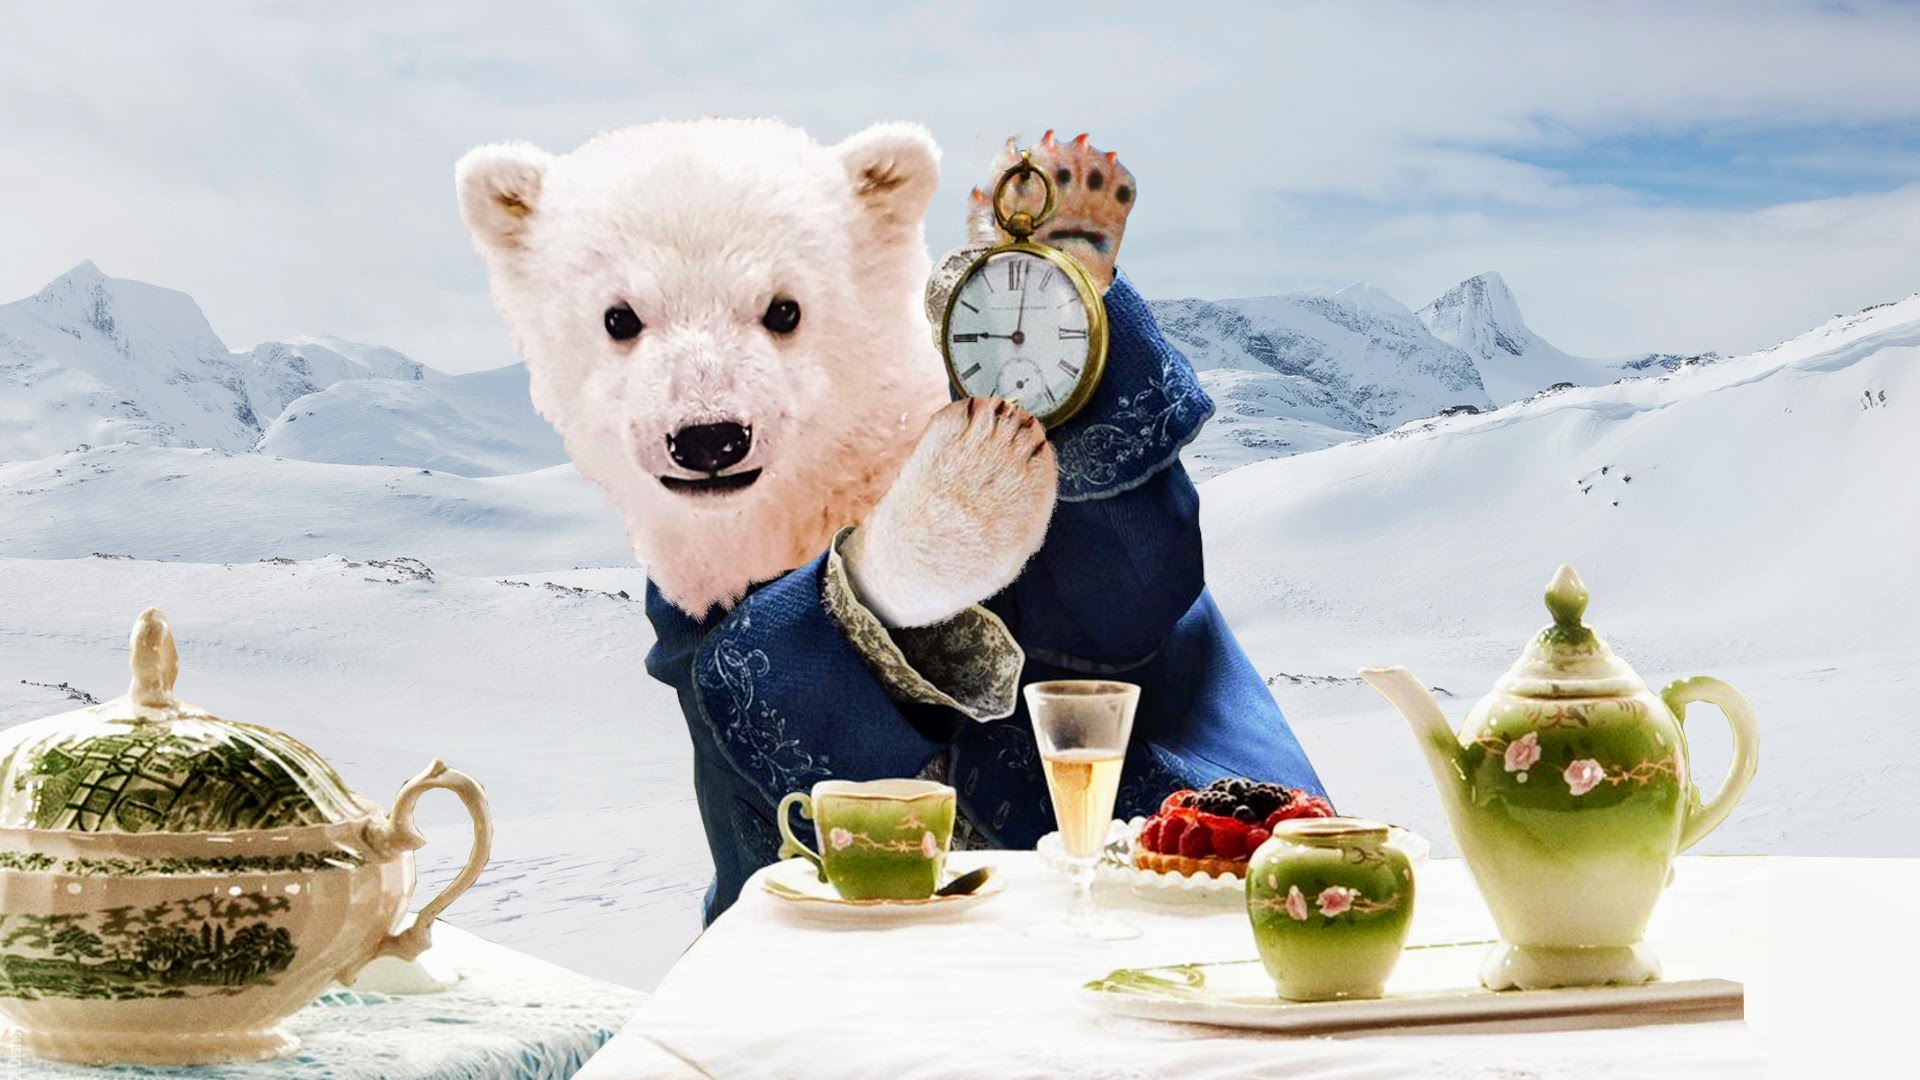 Le temps presse pour les ours